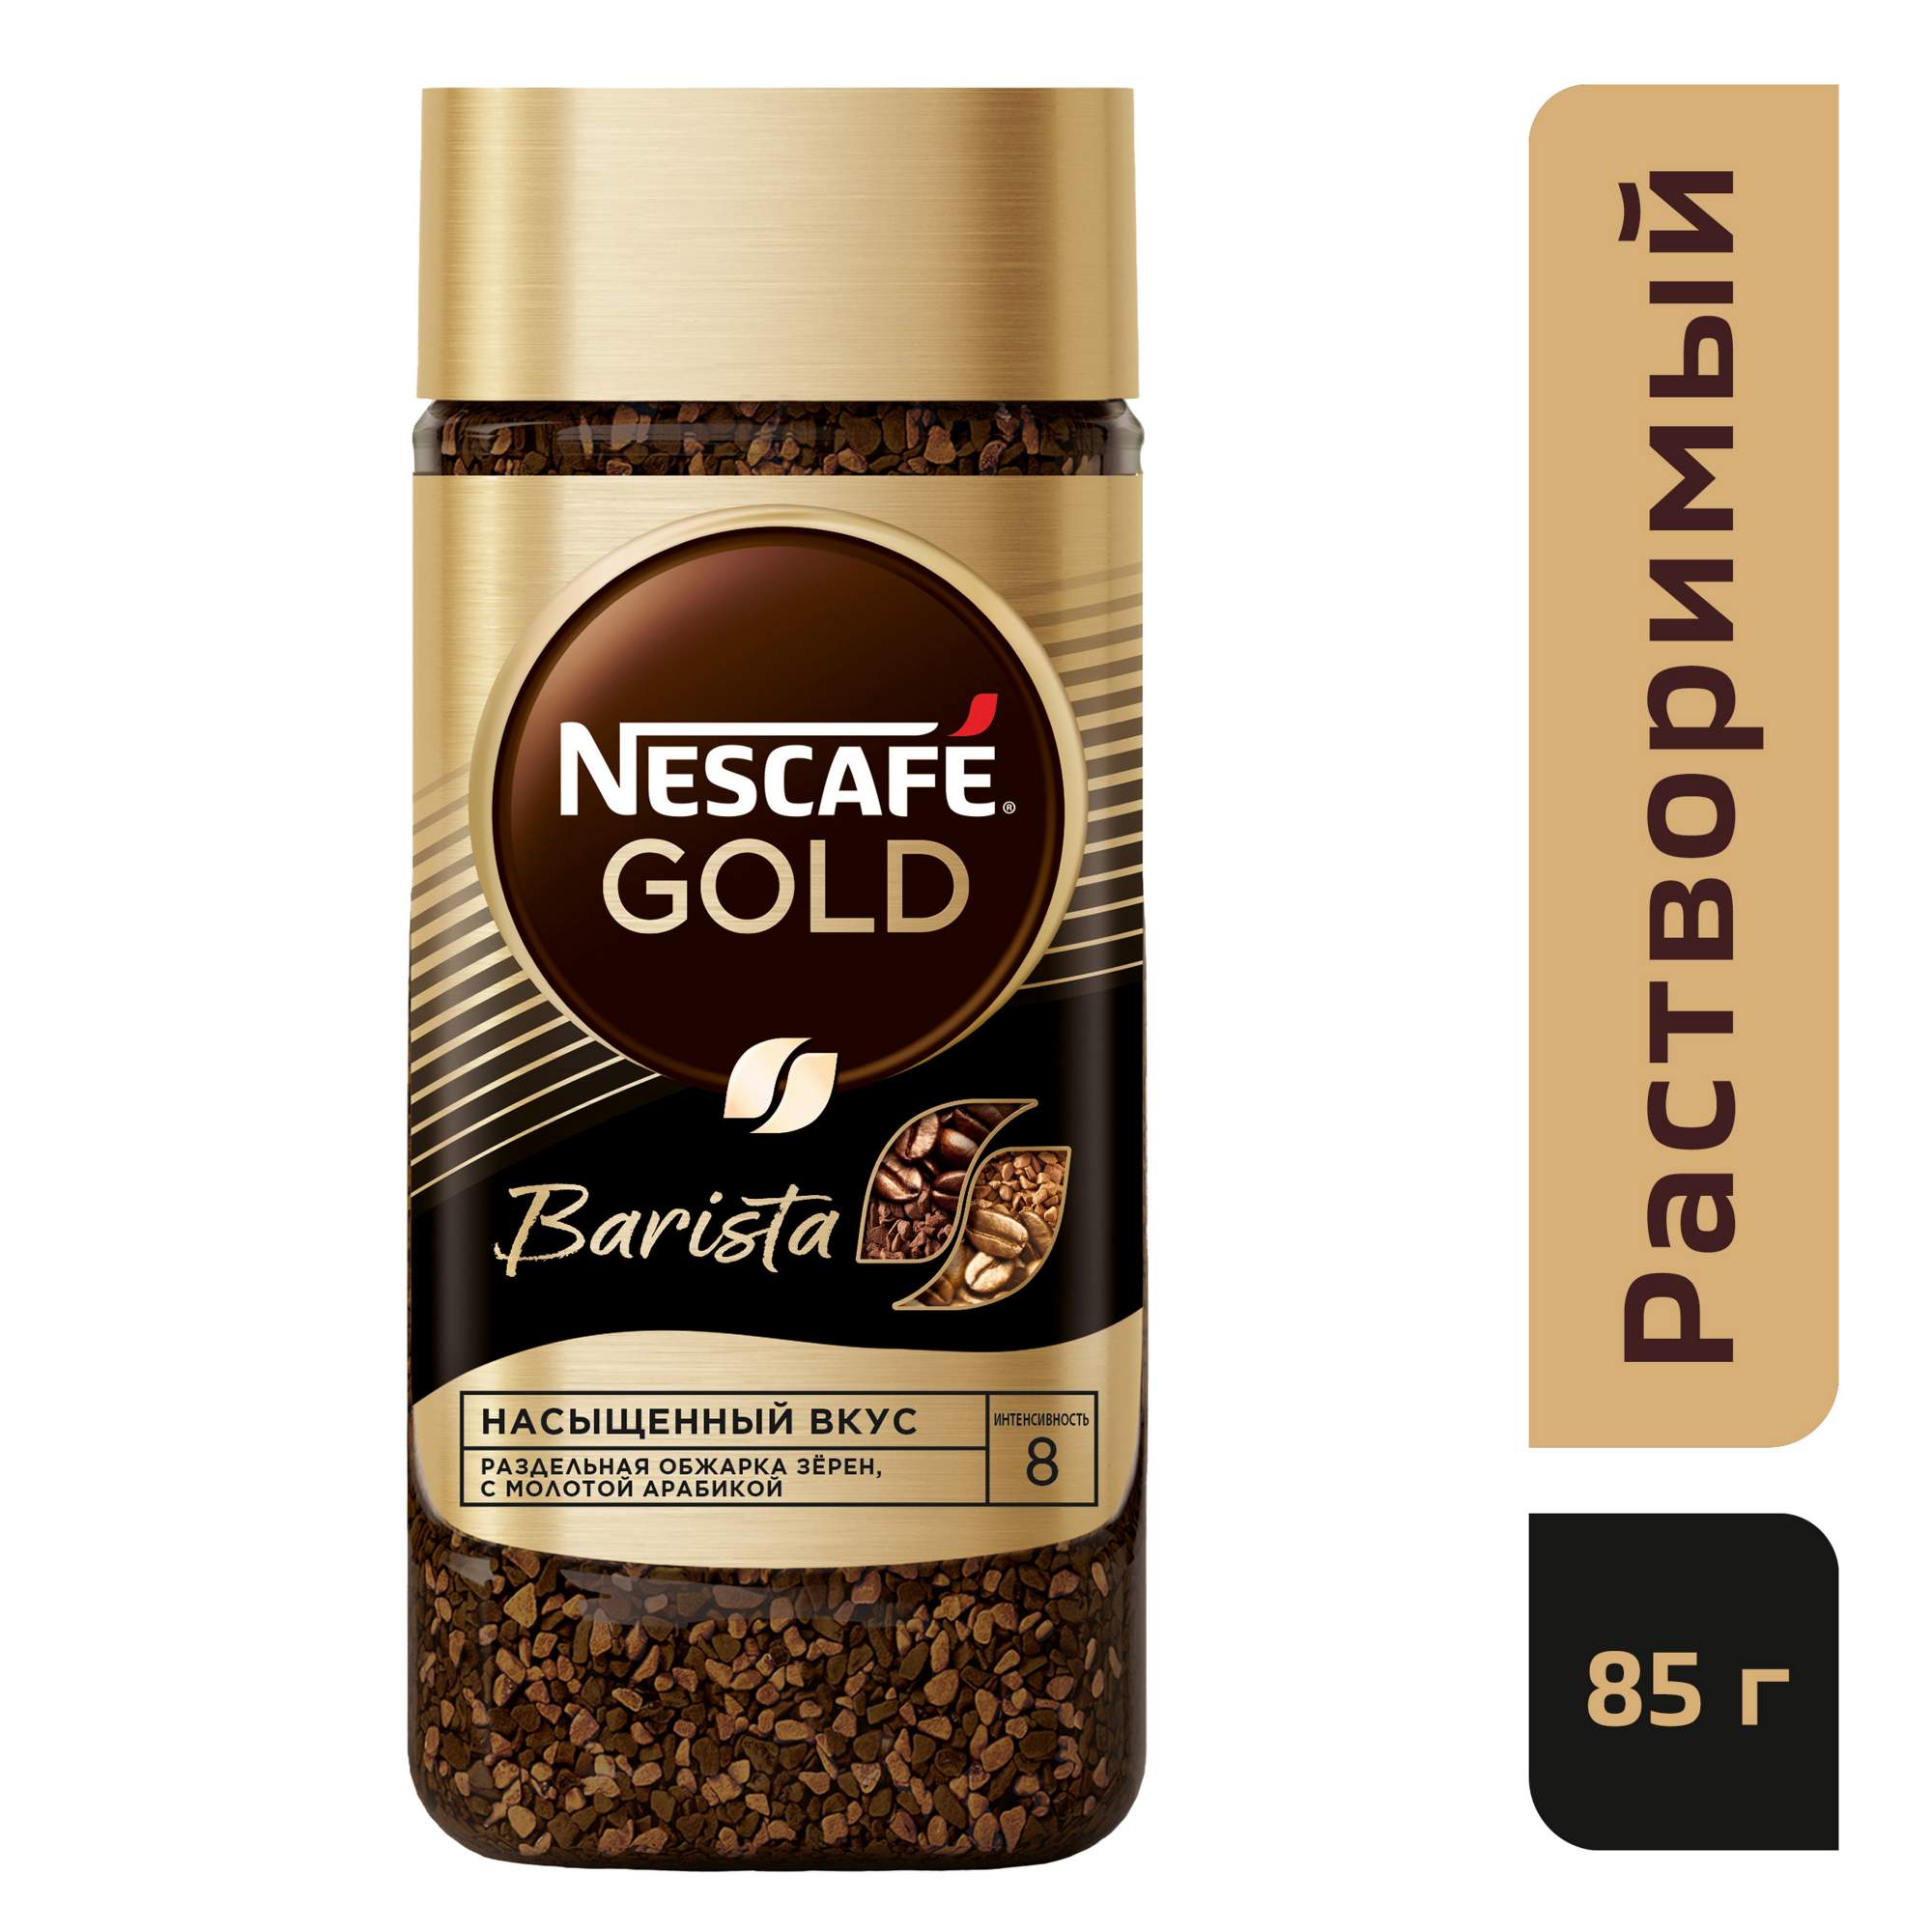 Кофе растворимый Nescafe gold barista стеклянная банка 85 г - отзывы покупателей на маркетплейсе Мегамаркет | Артикул: 100023621321